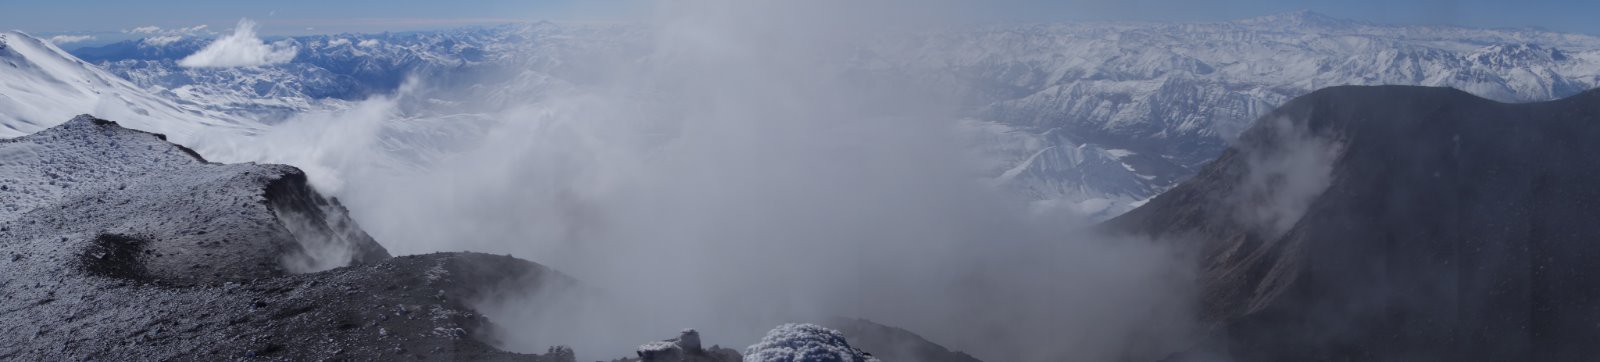 Panorama sur le cratère du volcan en activité